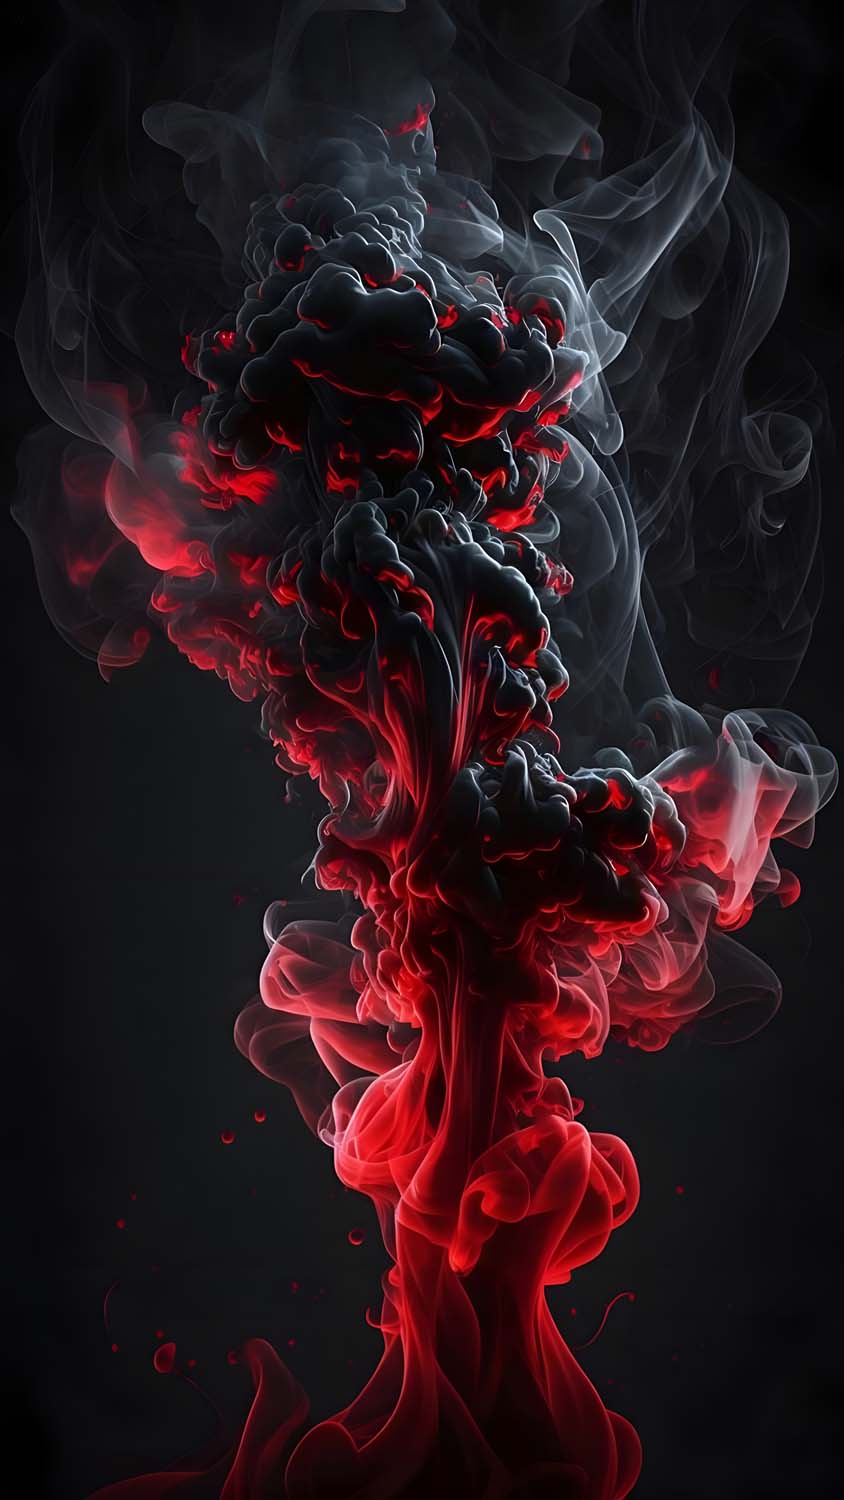 Blue and white smoke illustration photo – Free Incense sticks Image on  Unsplash